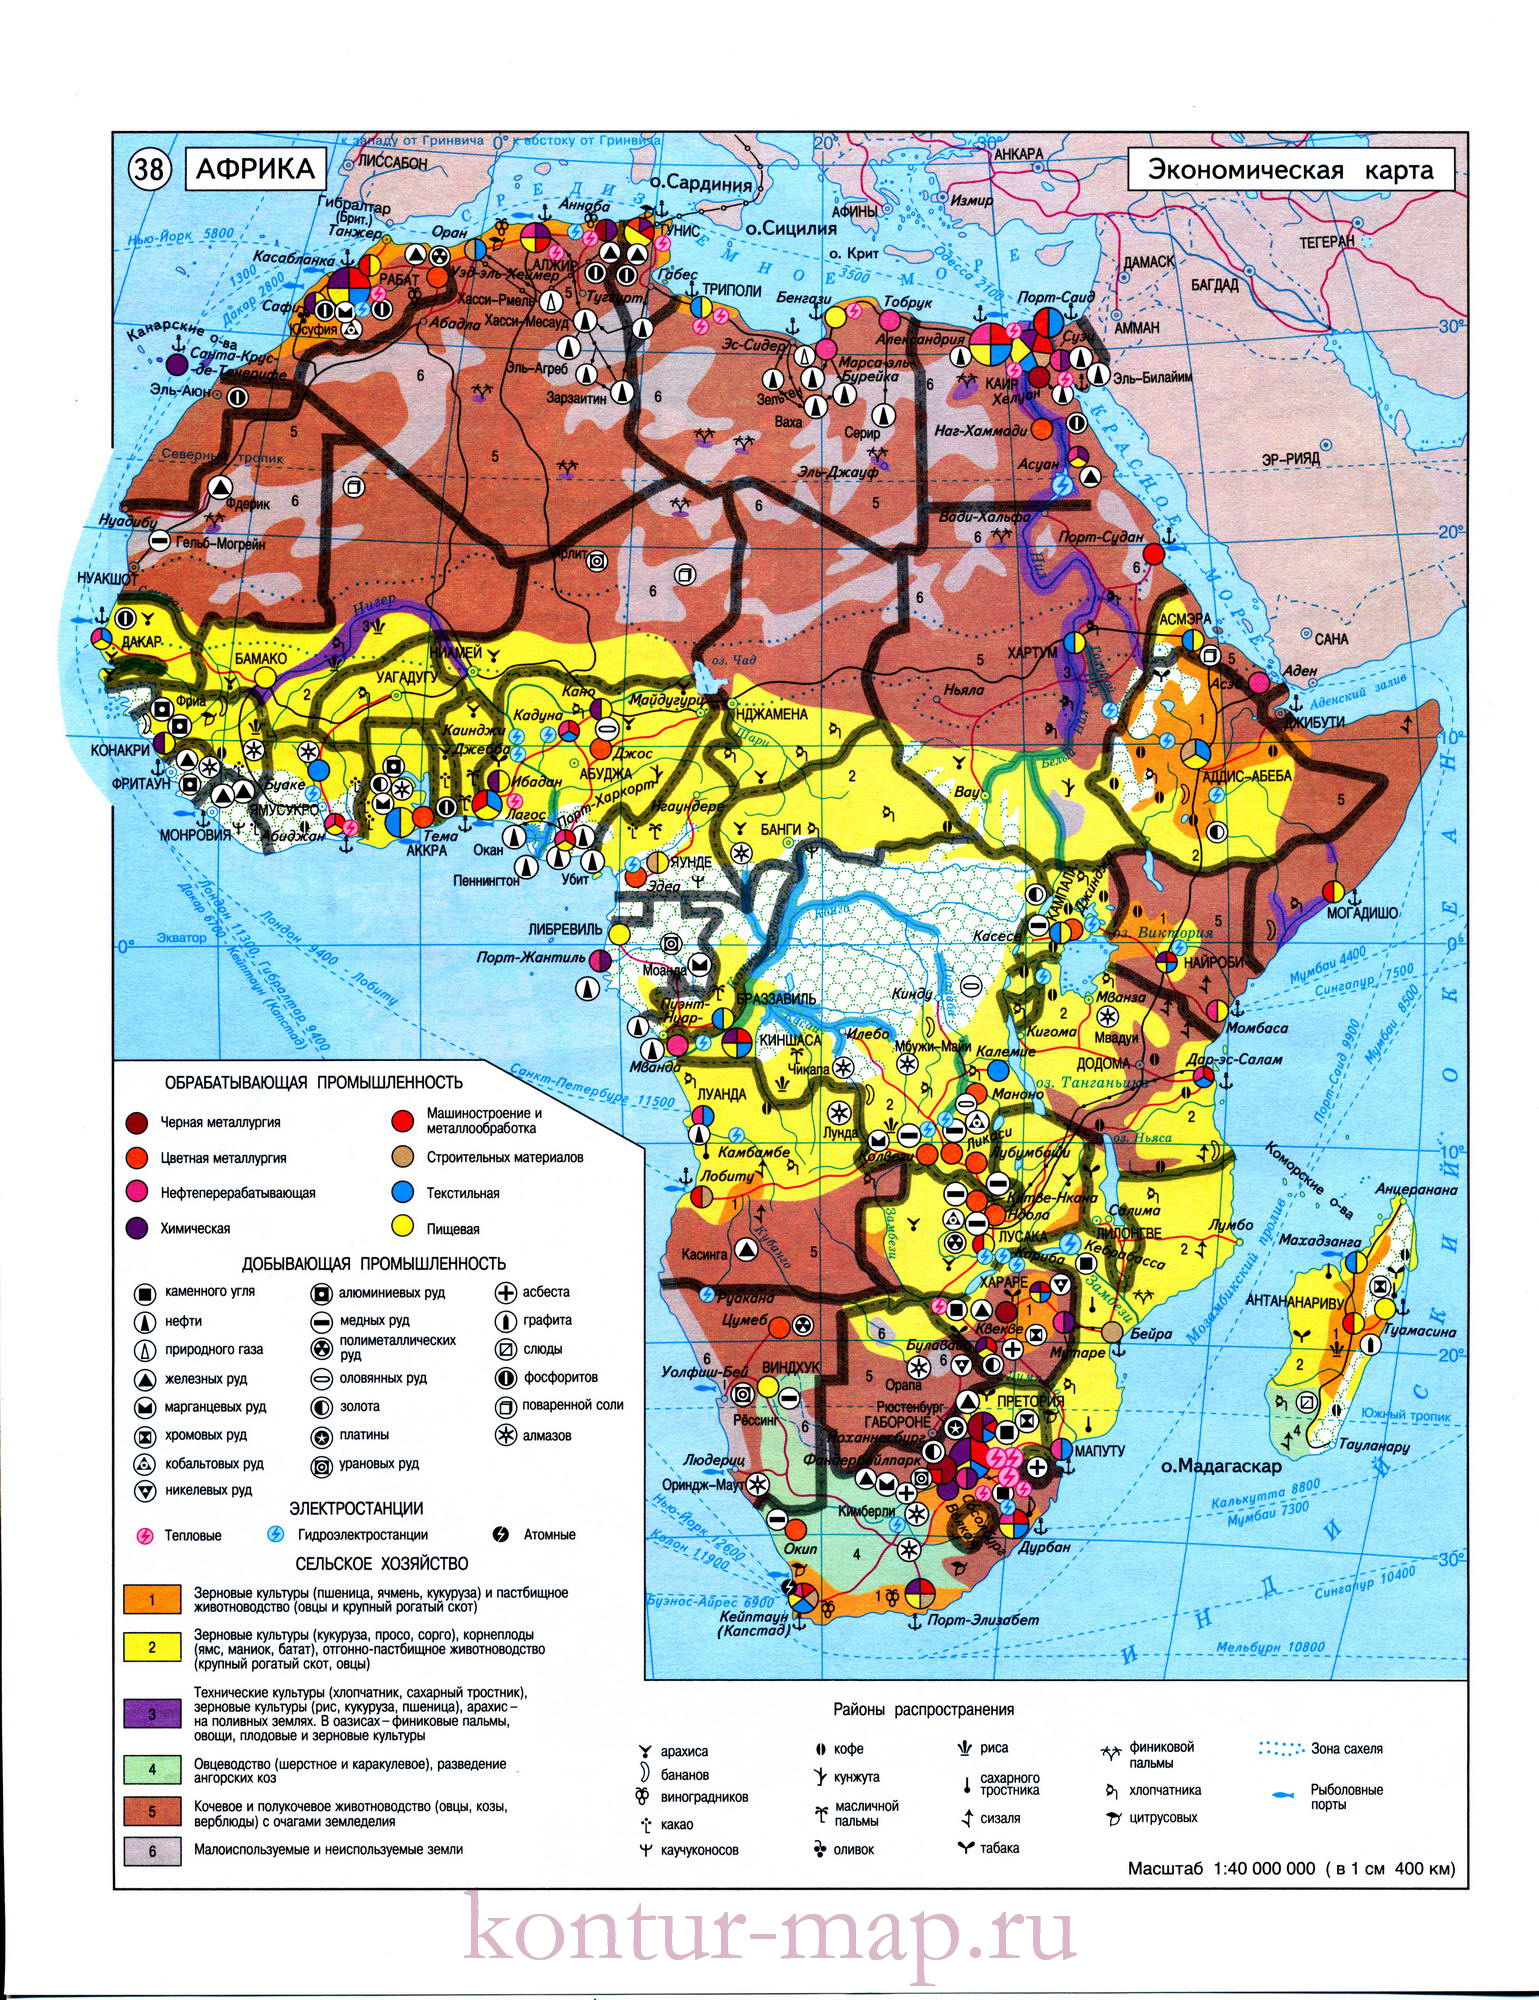 Экономическая карта Африки. Новая современная карта Африки - экономика исельское хозяйство